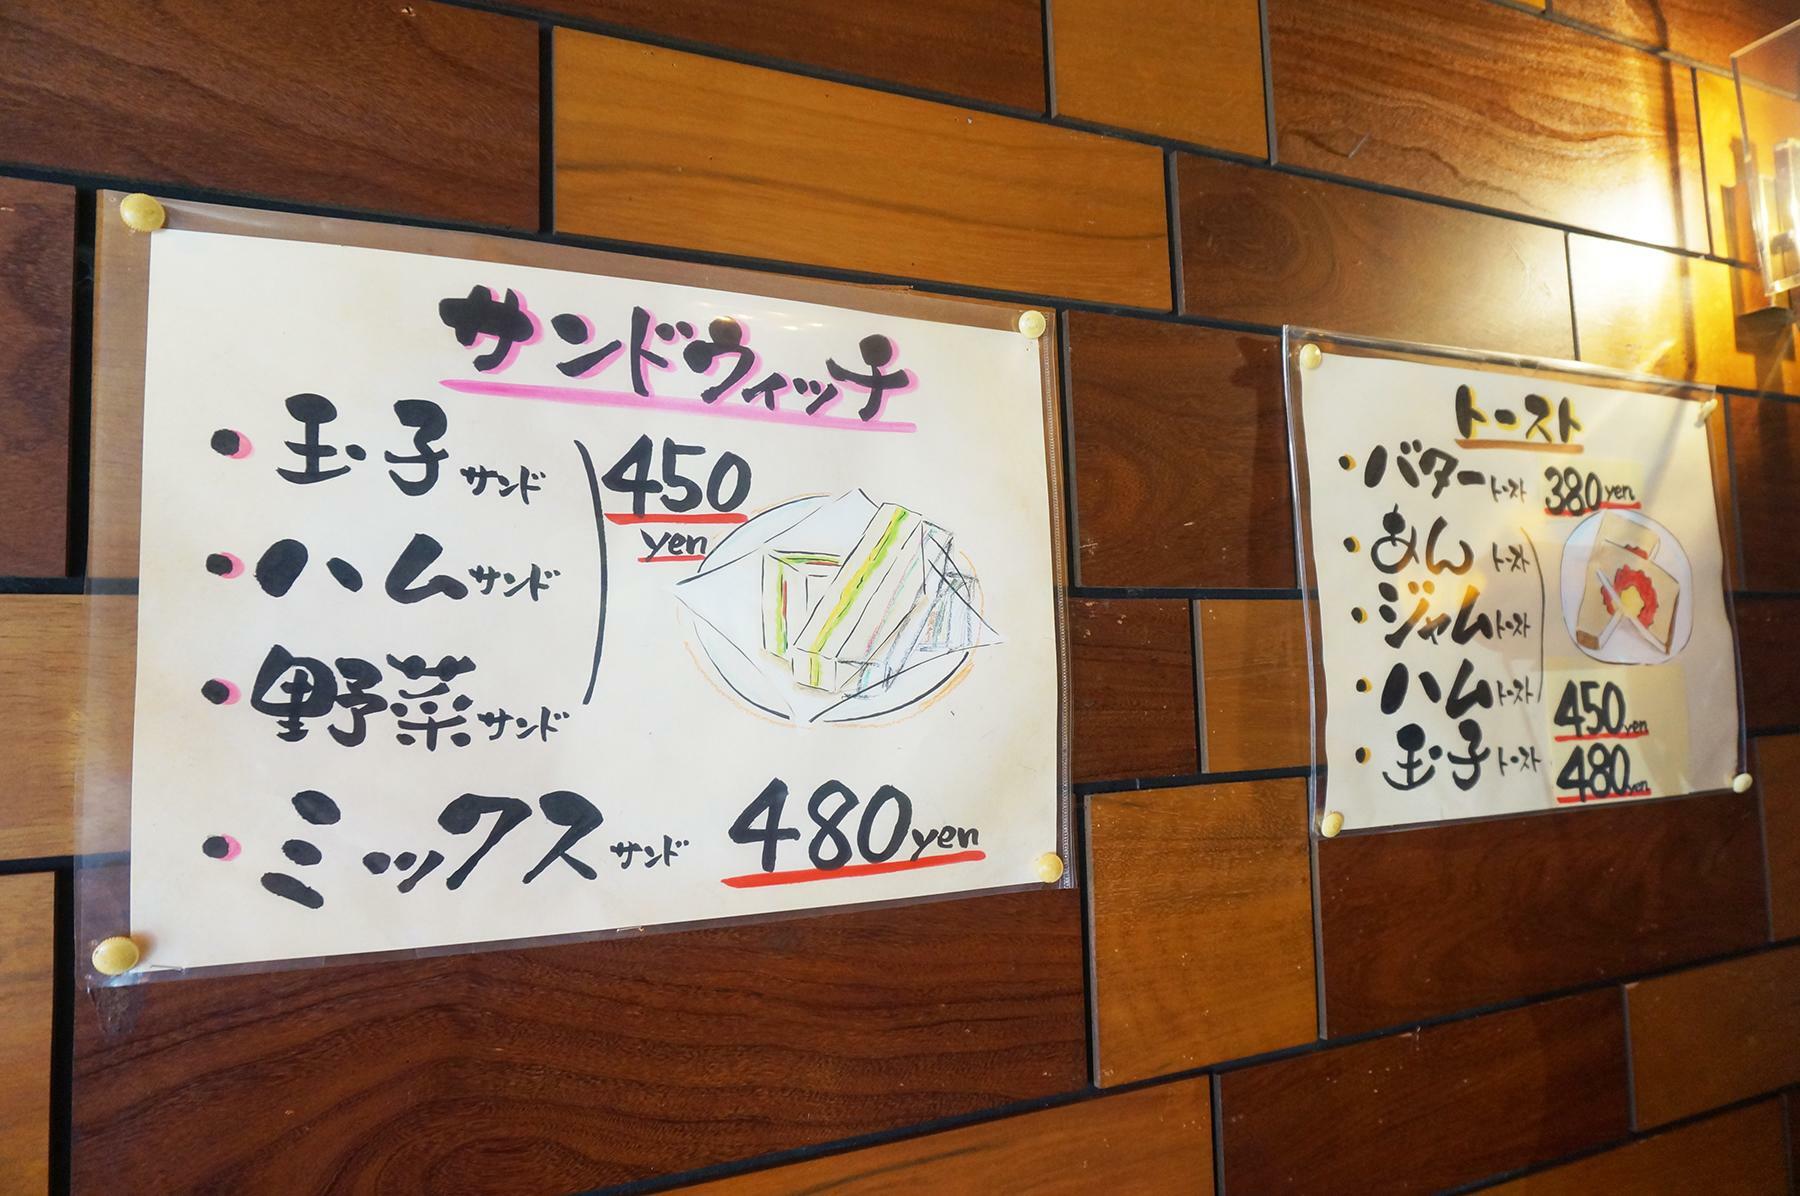 喫茶あい店内のメニュー表も櫻井上席師範が描かれています。